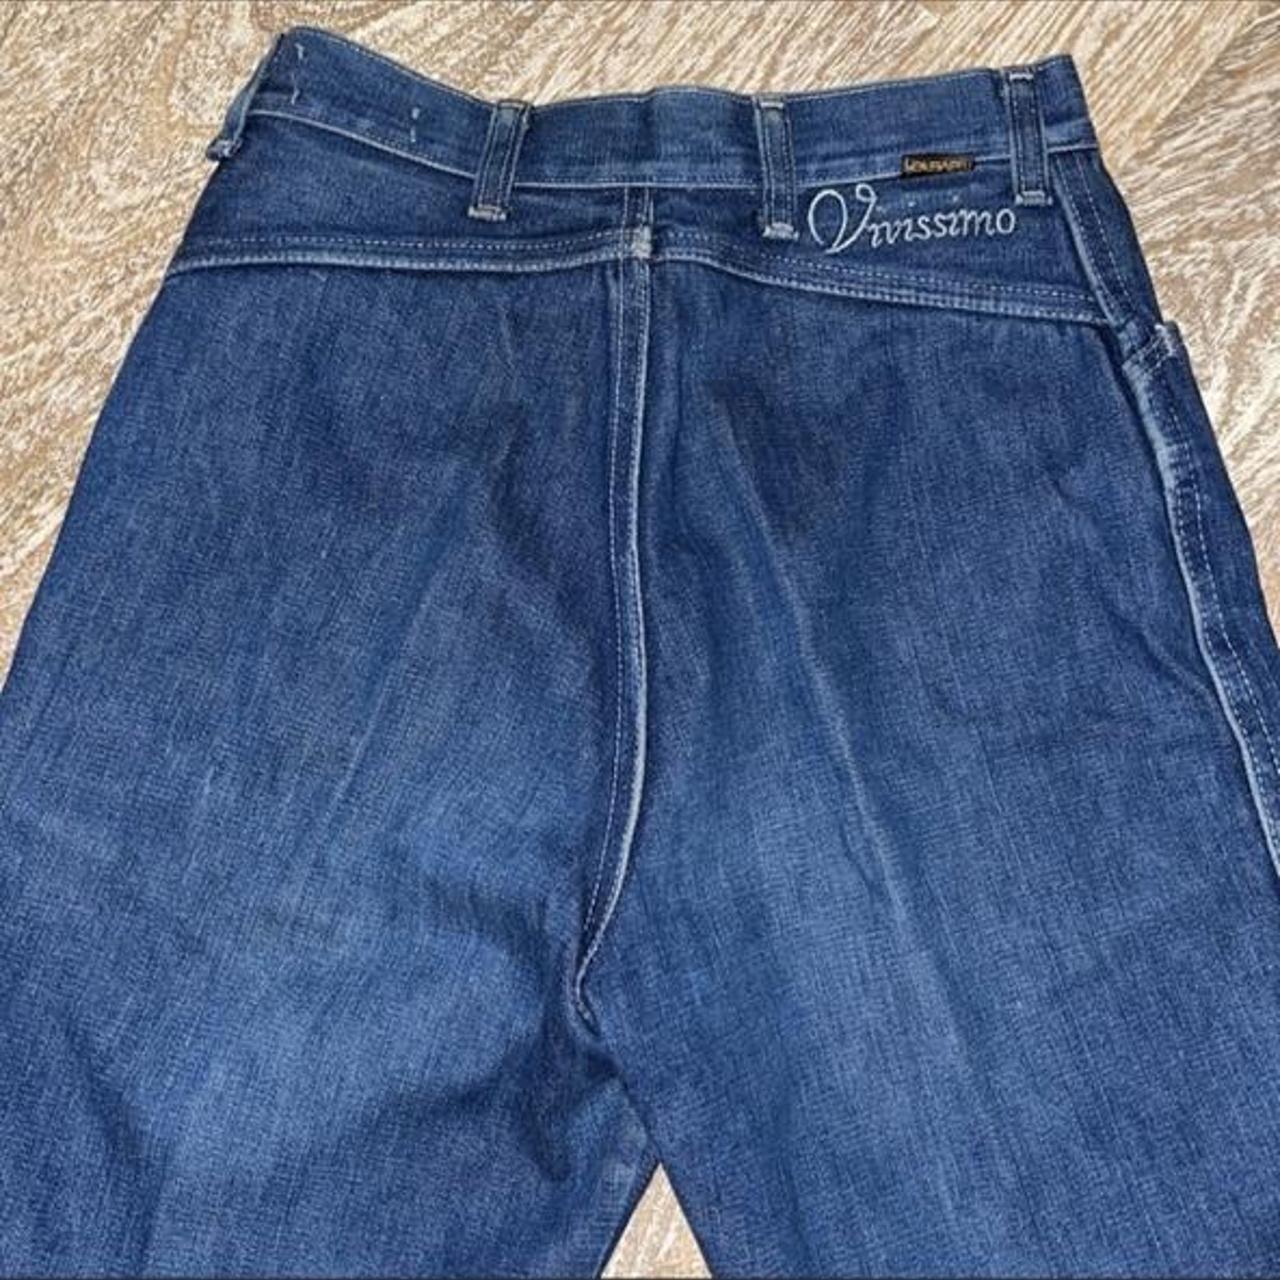 Vintage blue jeans high waisted Maverick Vississimo... - Depop